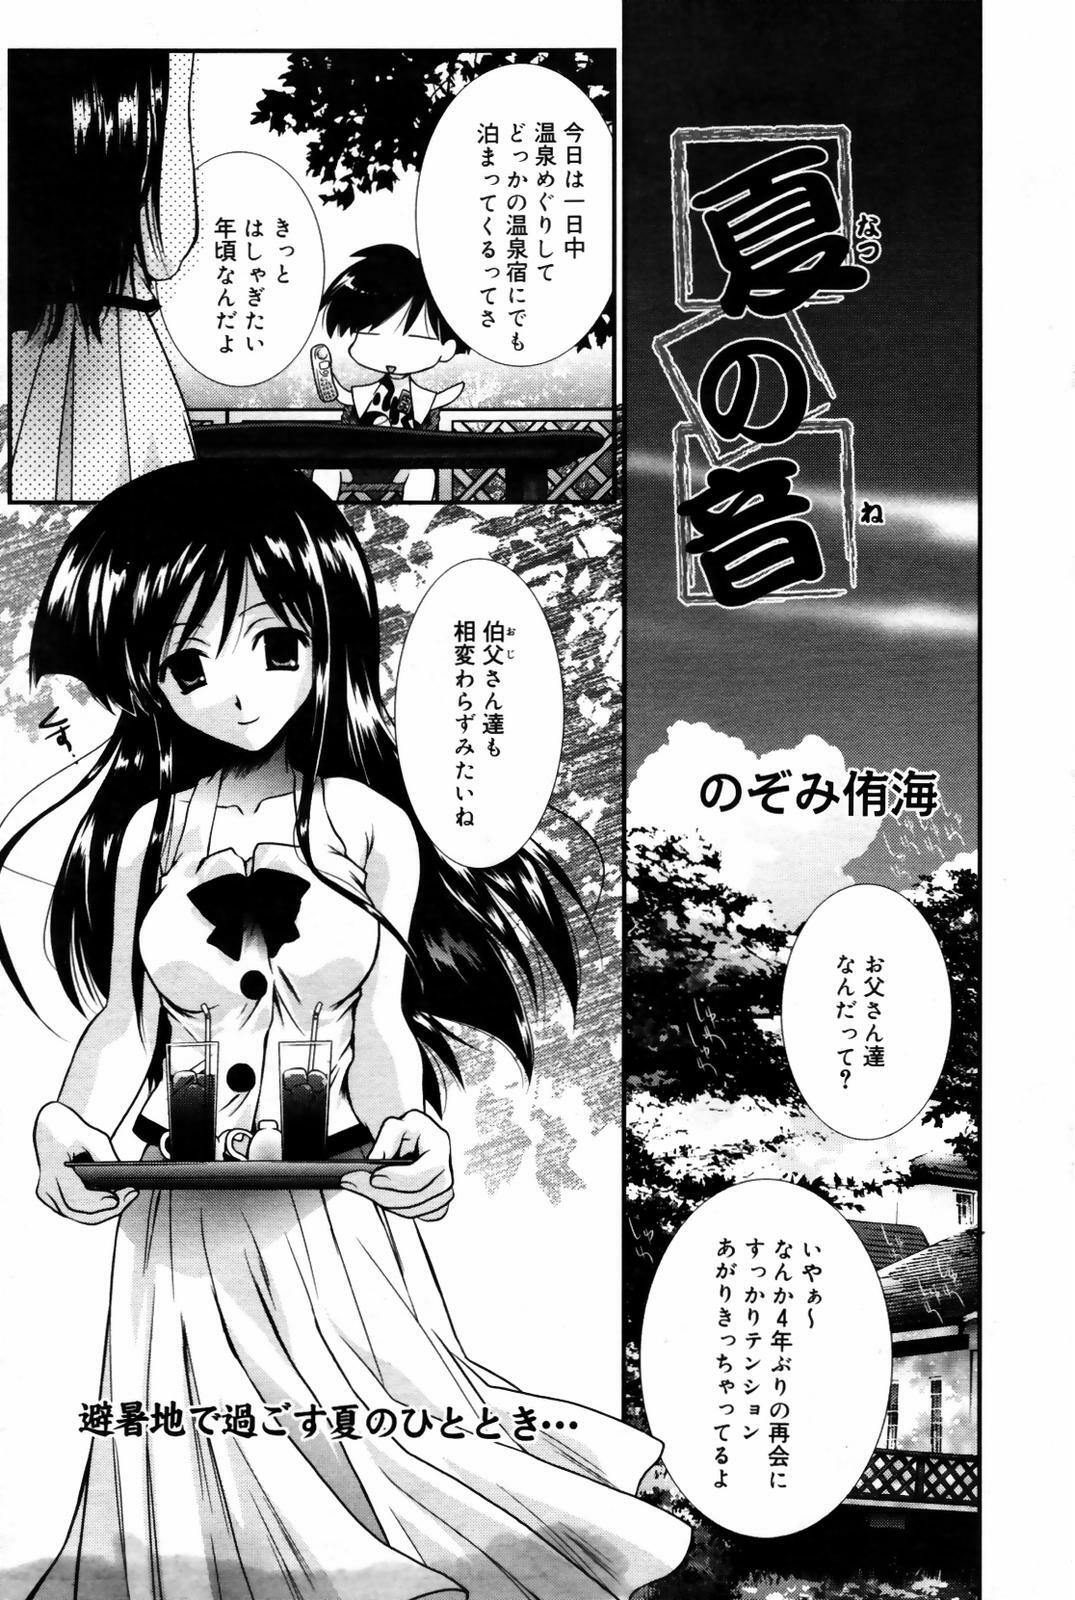 Manga Bangaichi 2007-09 page 39 full